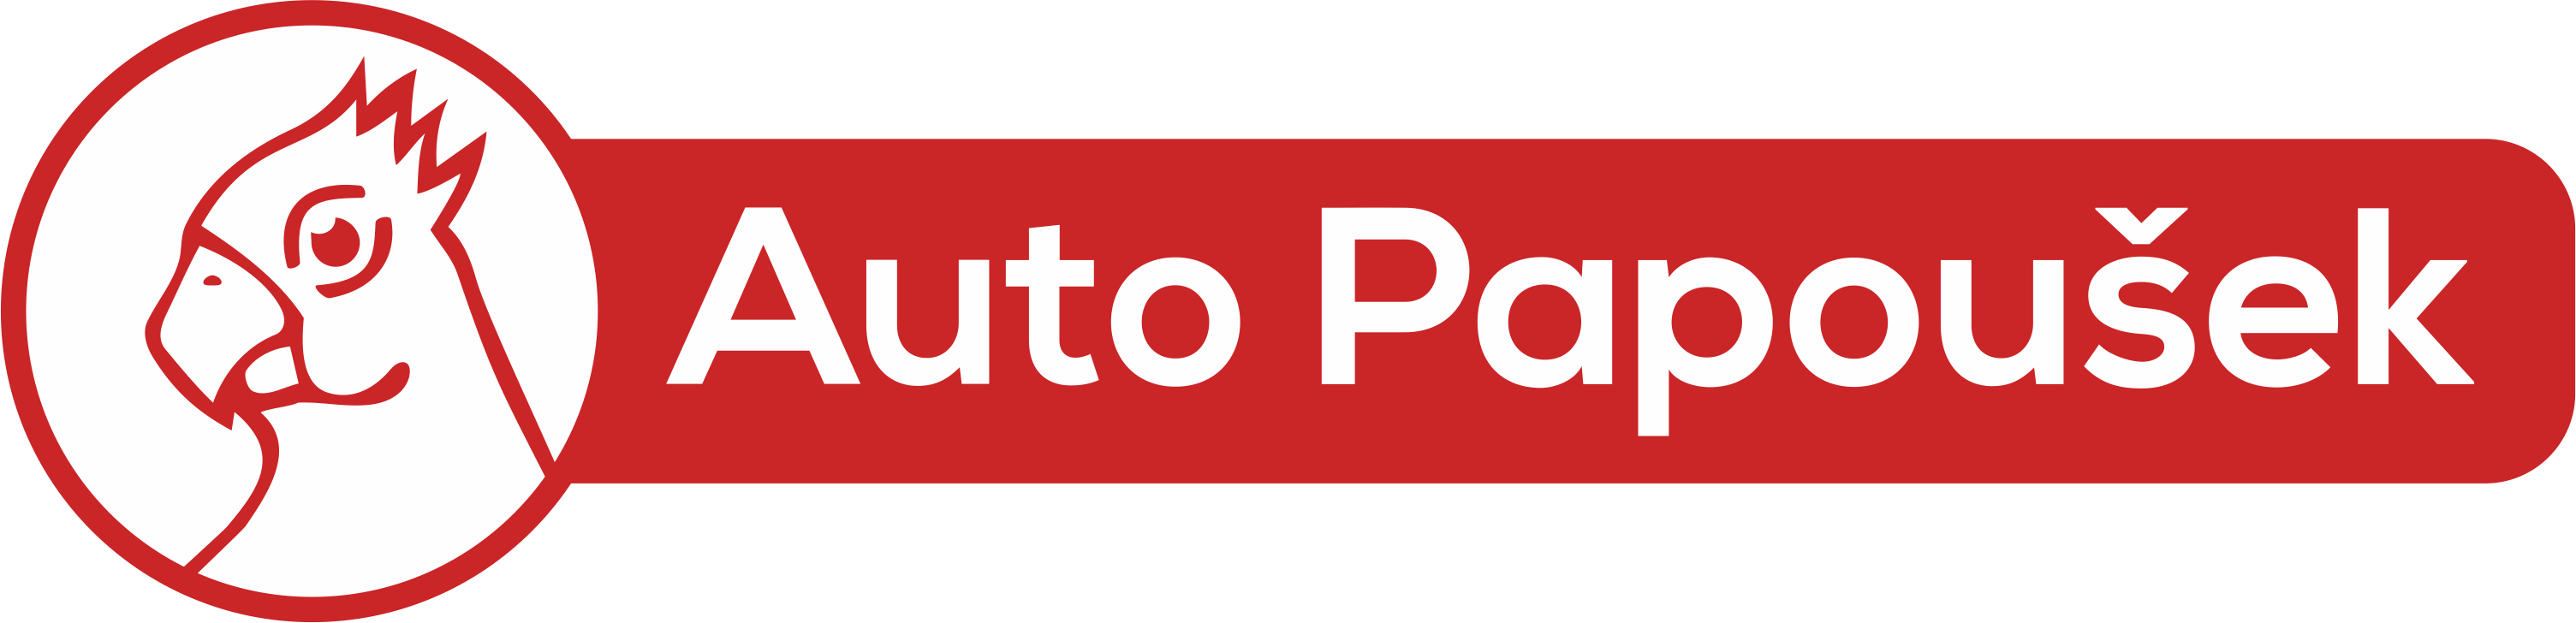 Auto Papoušek - logo